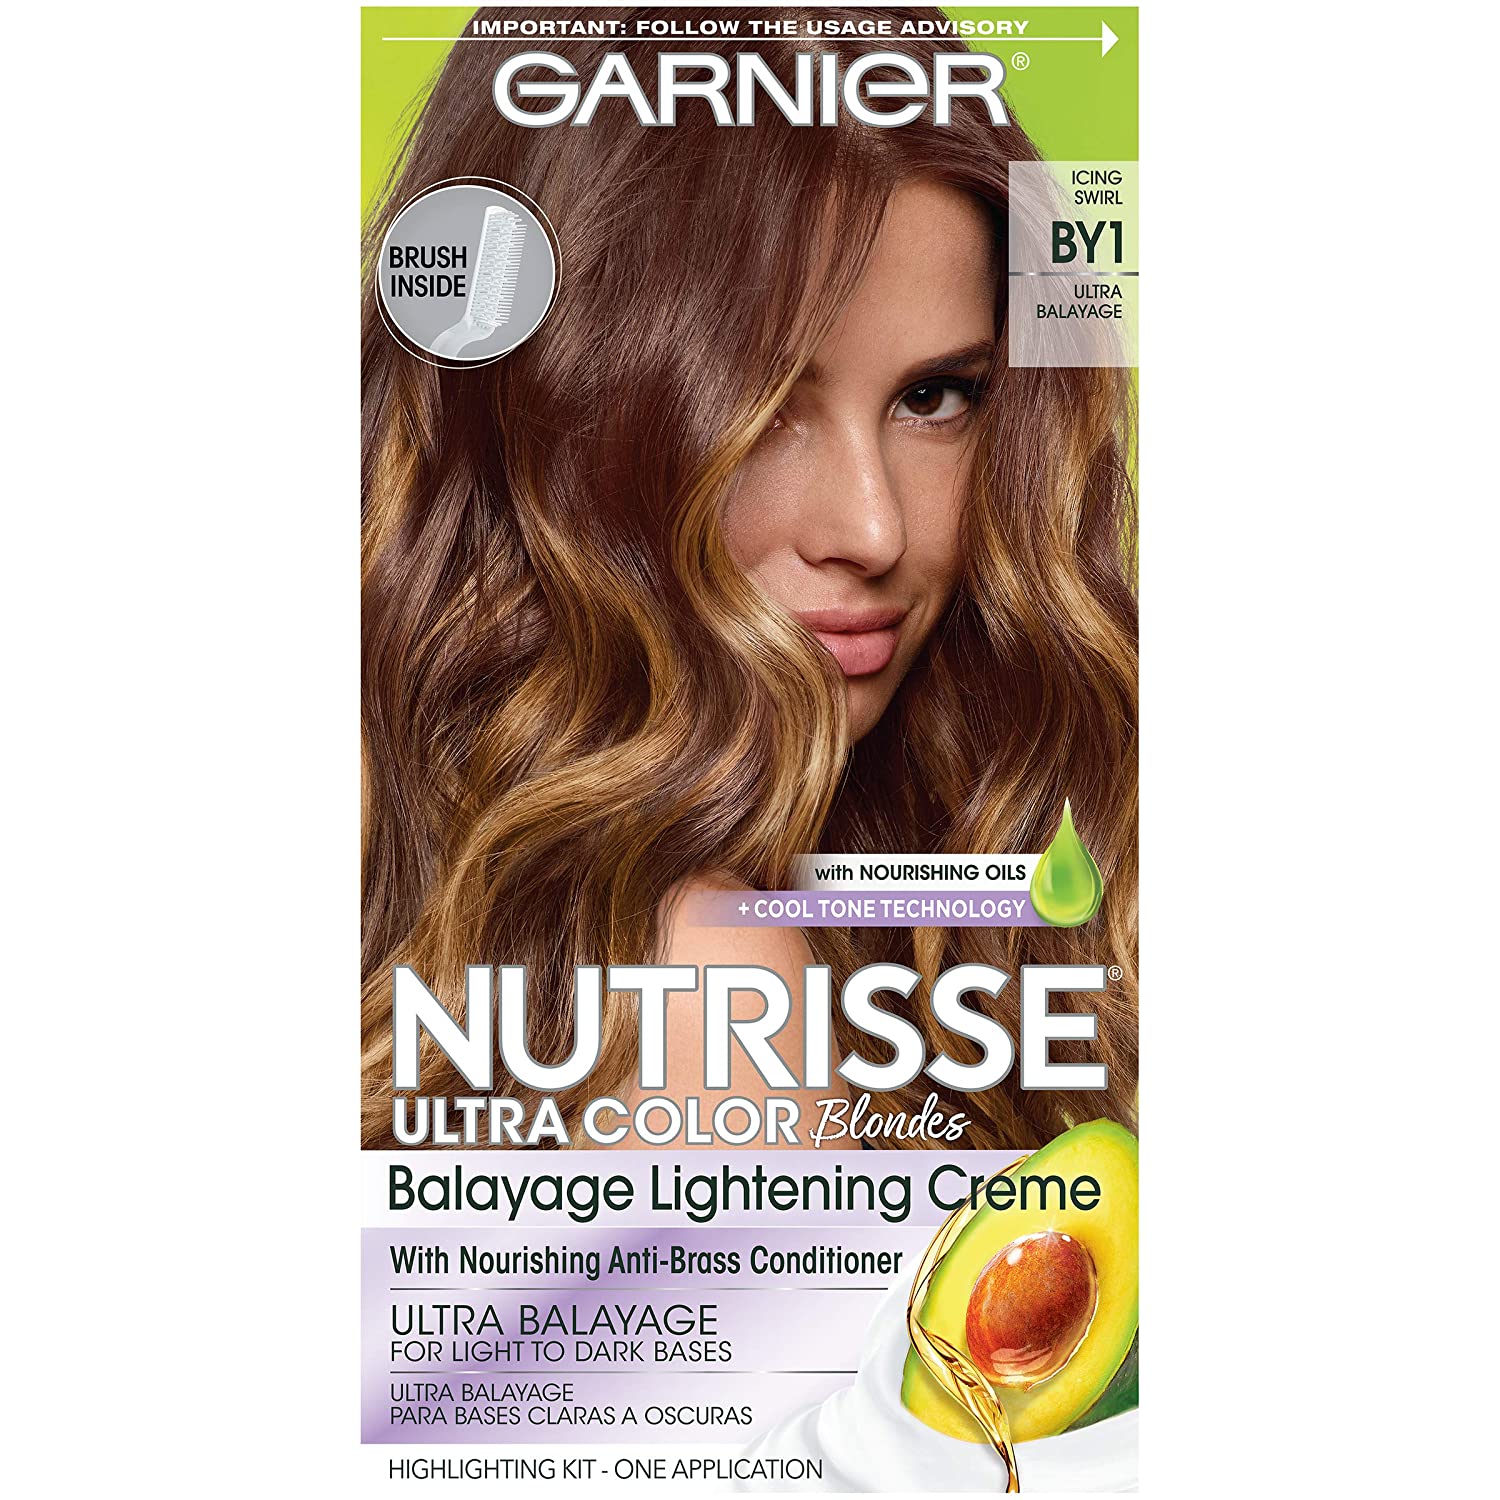 Garnier Hair Color Nutrisse Ultra Color Nourishing [...]